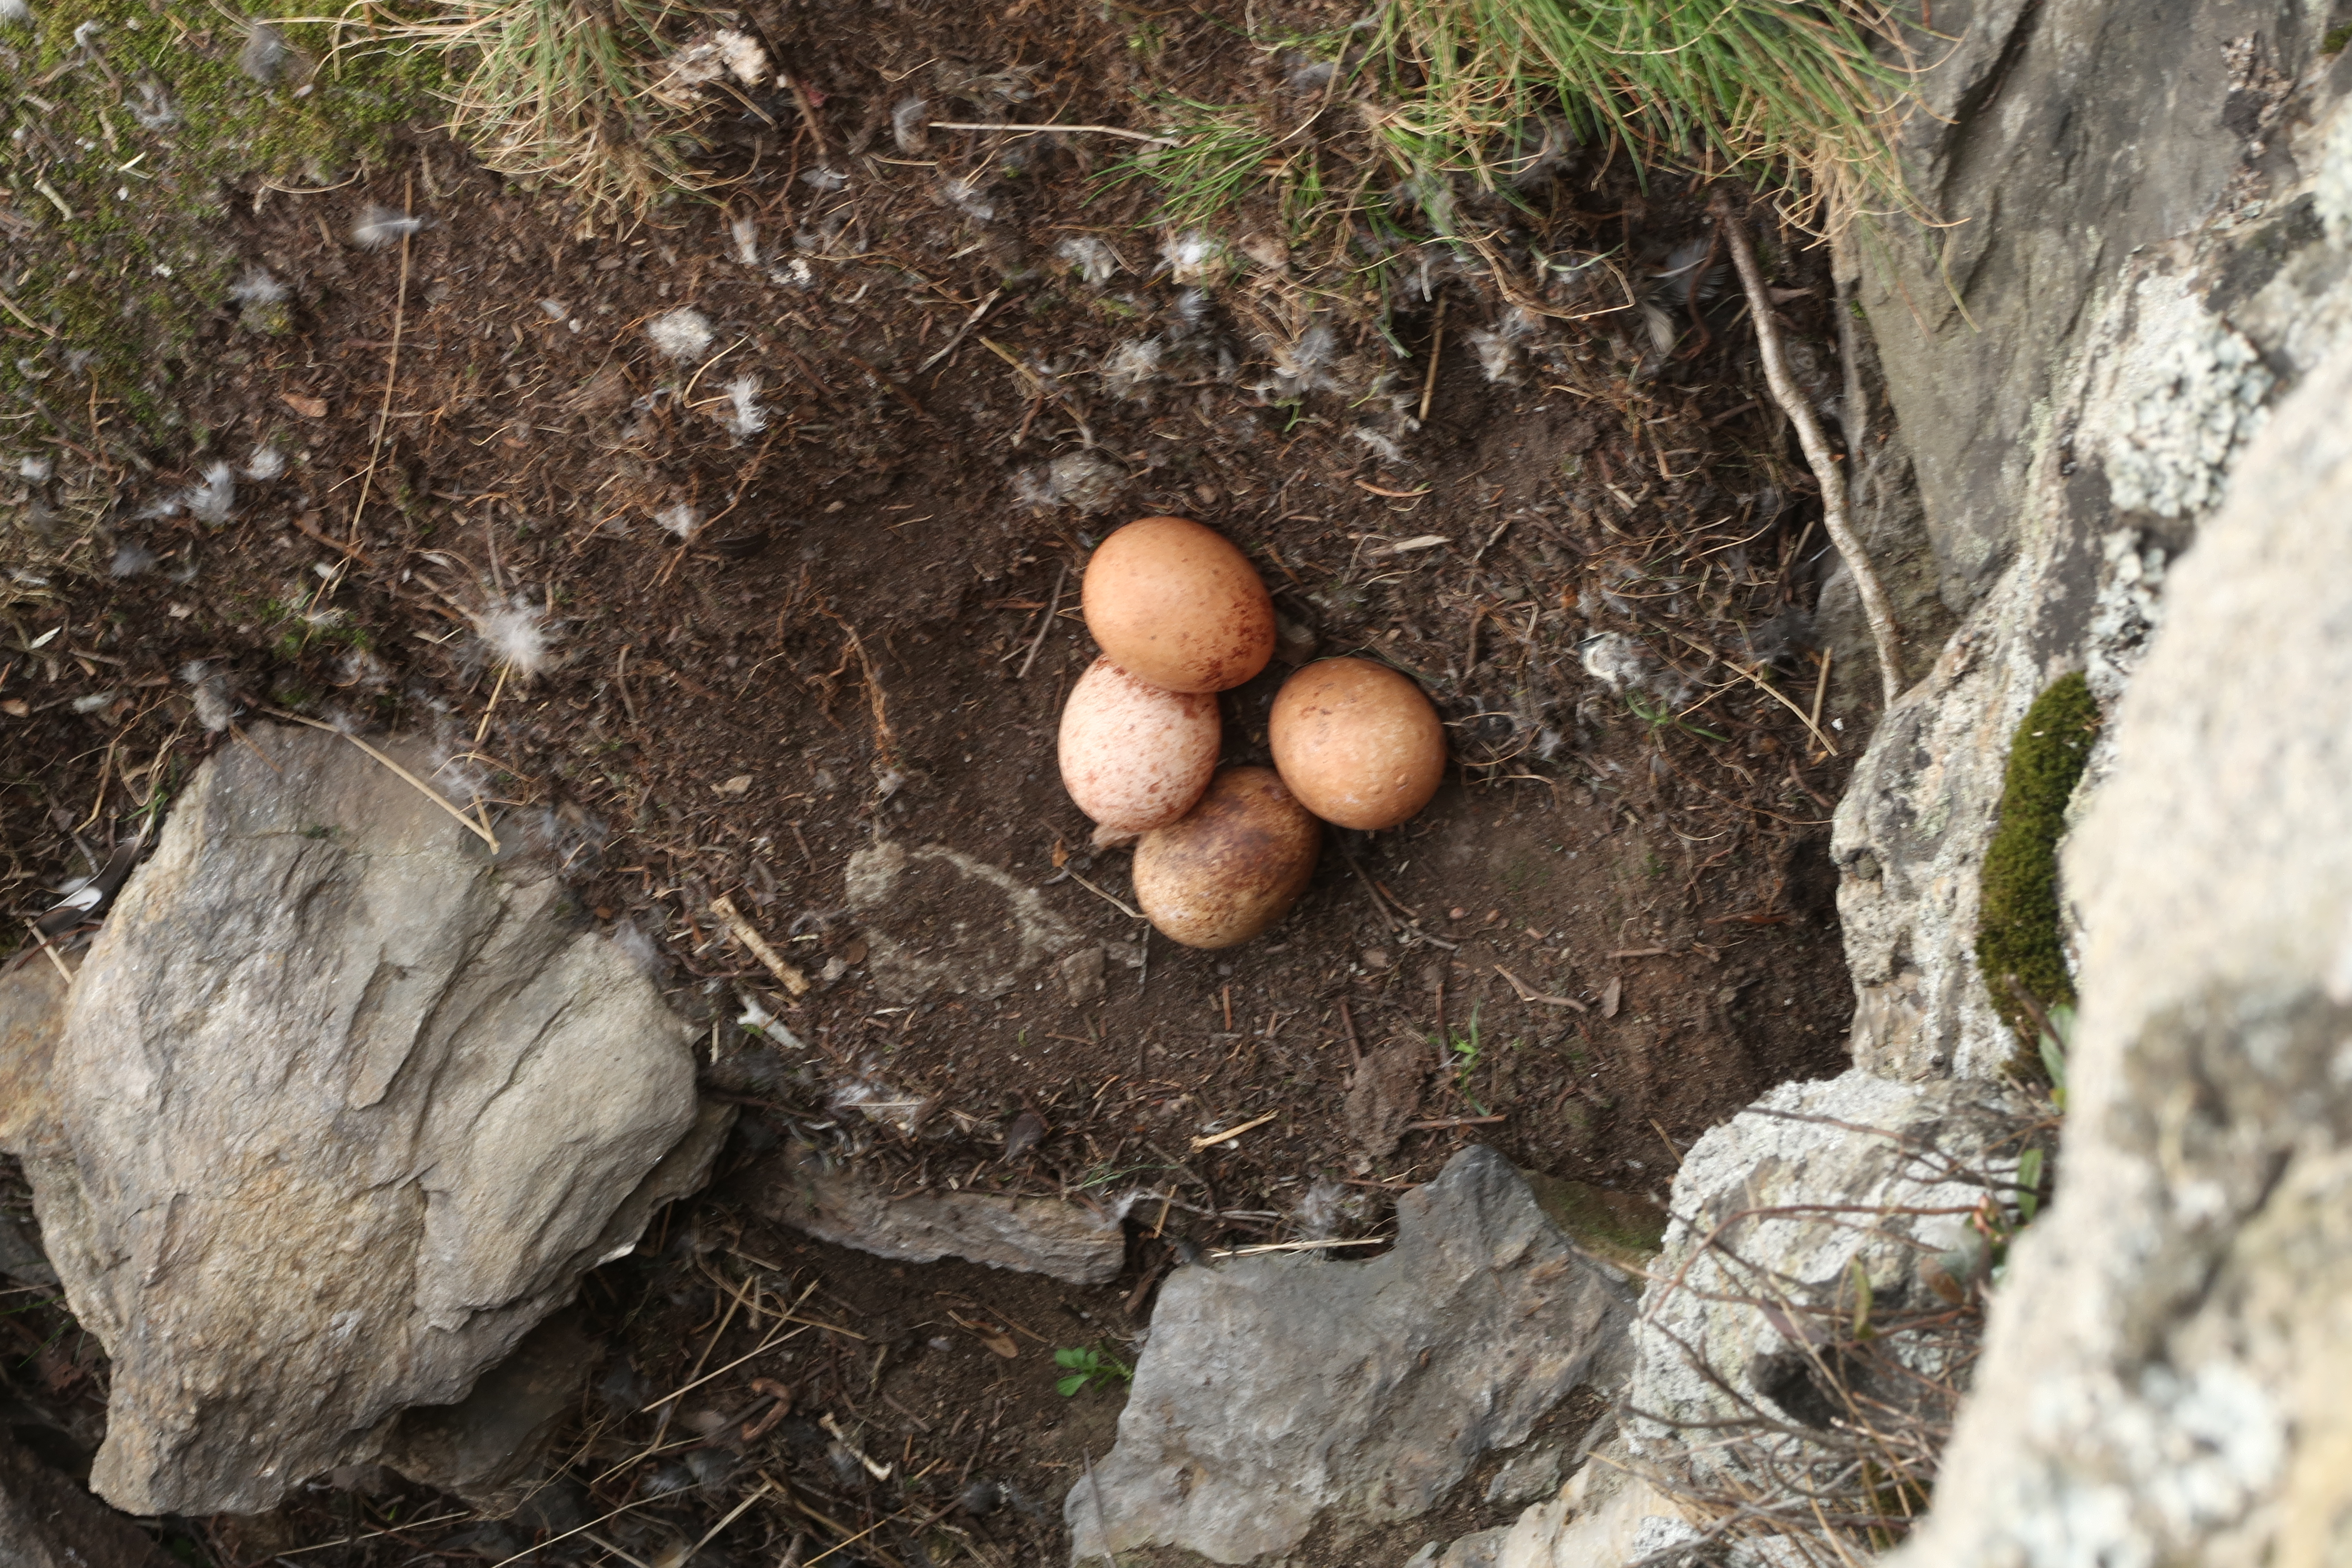 Sokolí snůška obsahuje nejčastěji 4 vejce.